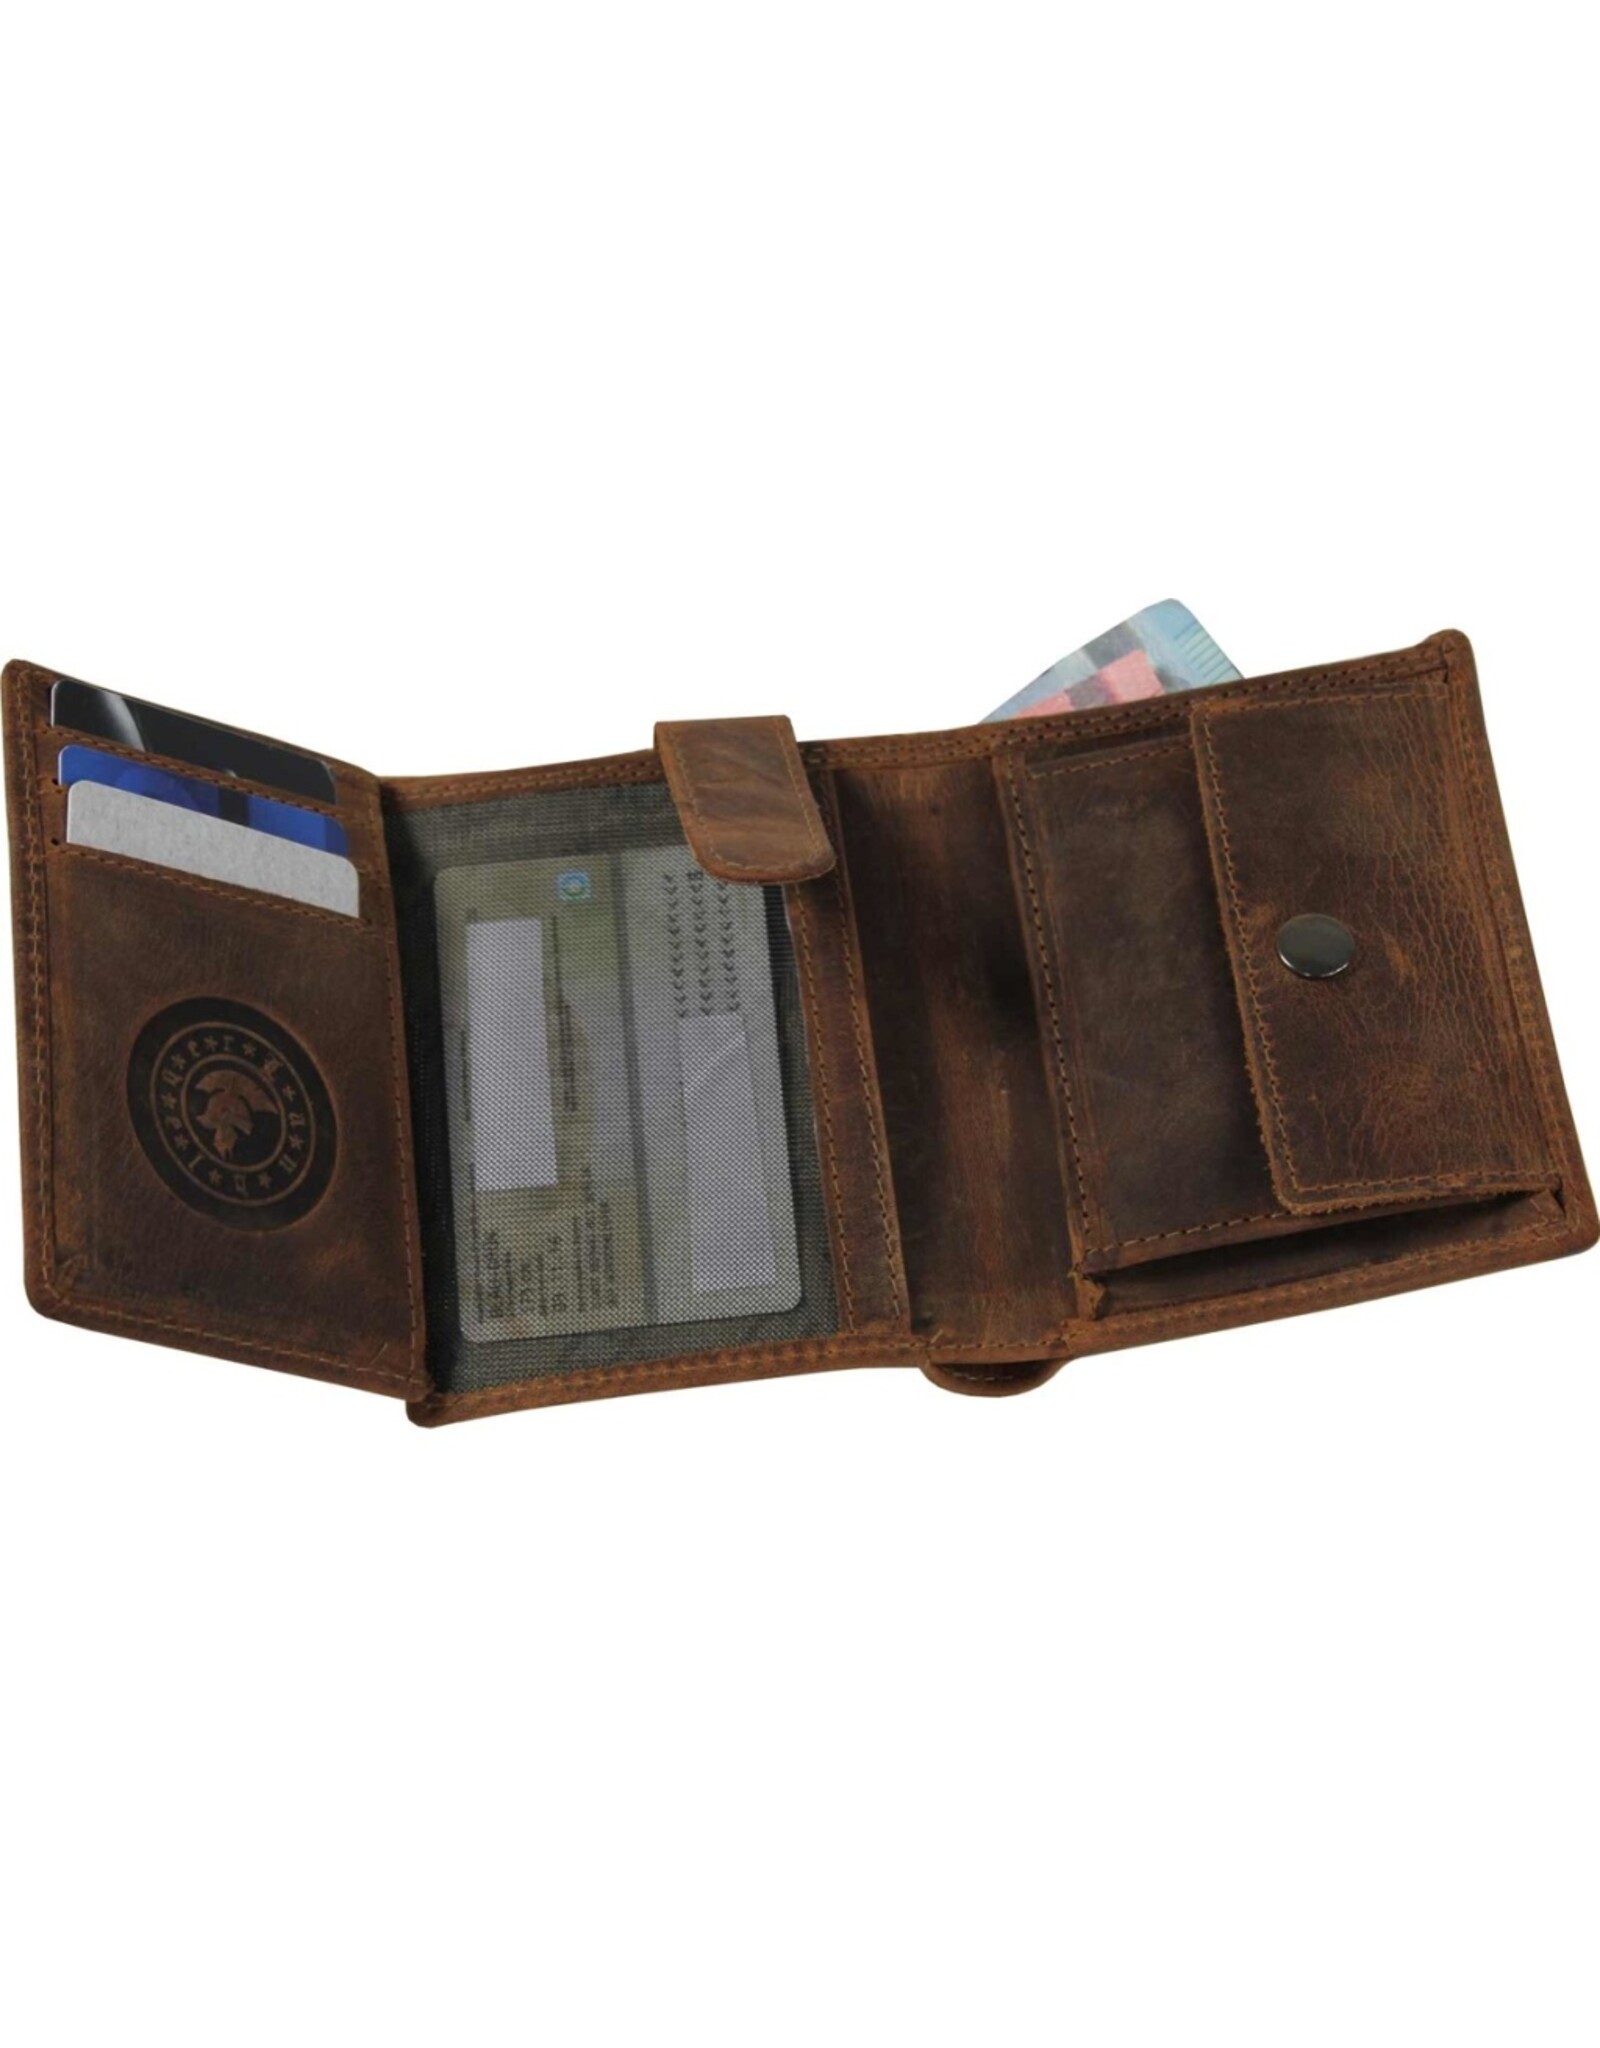 LandLeder Leather Wallets - Combi wallet BULL & SNAKE regular size, RFID